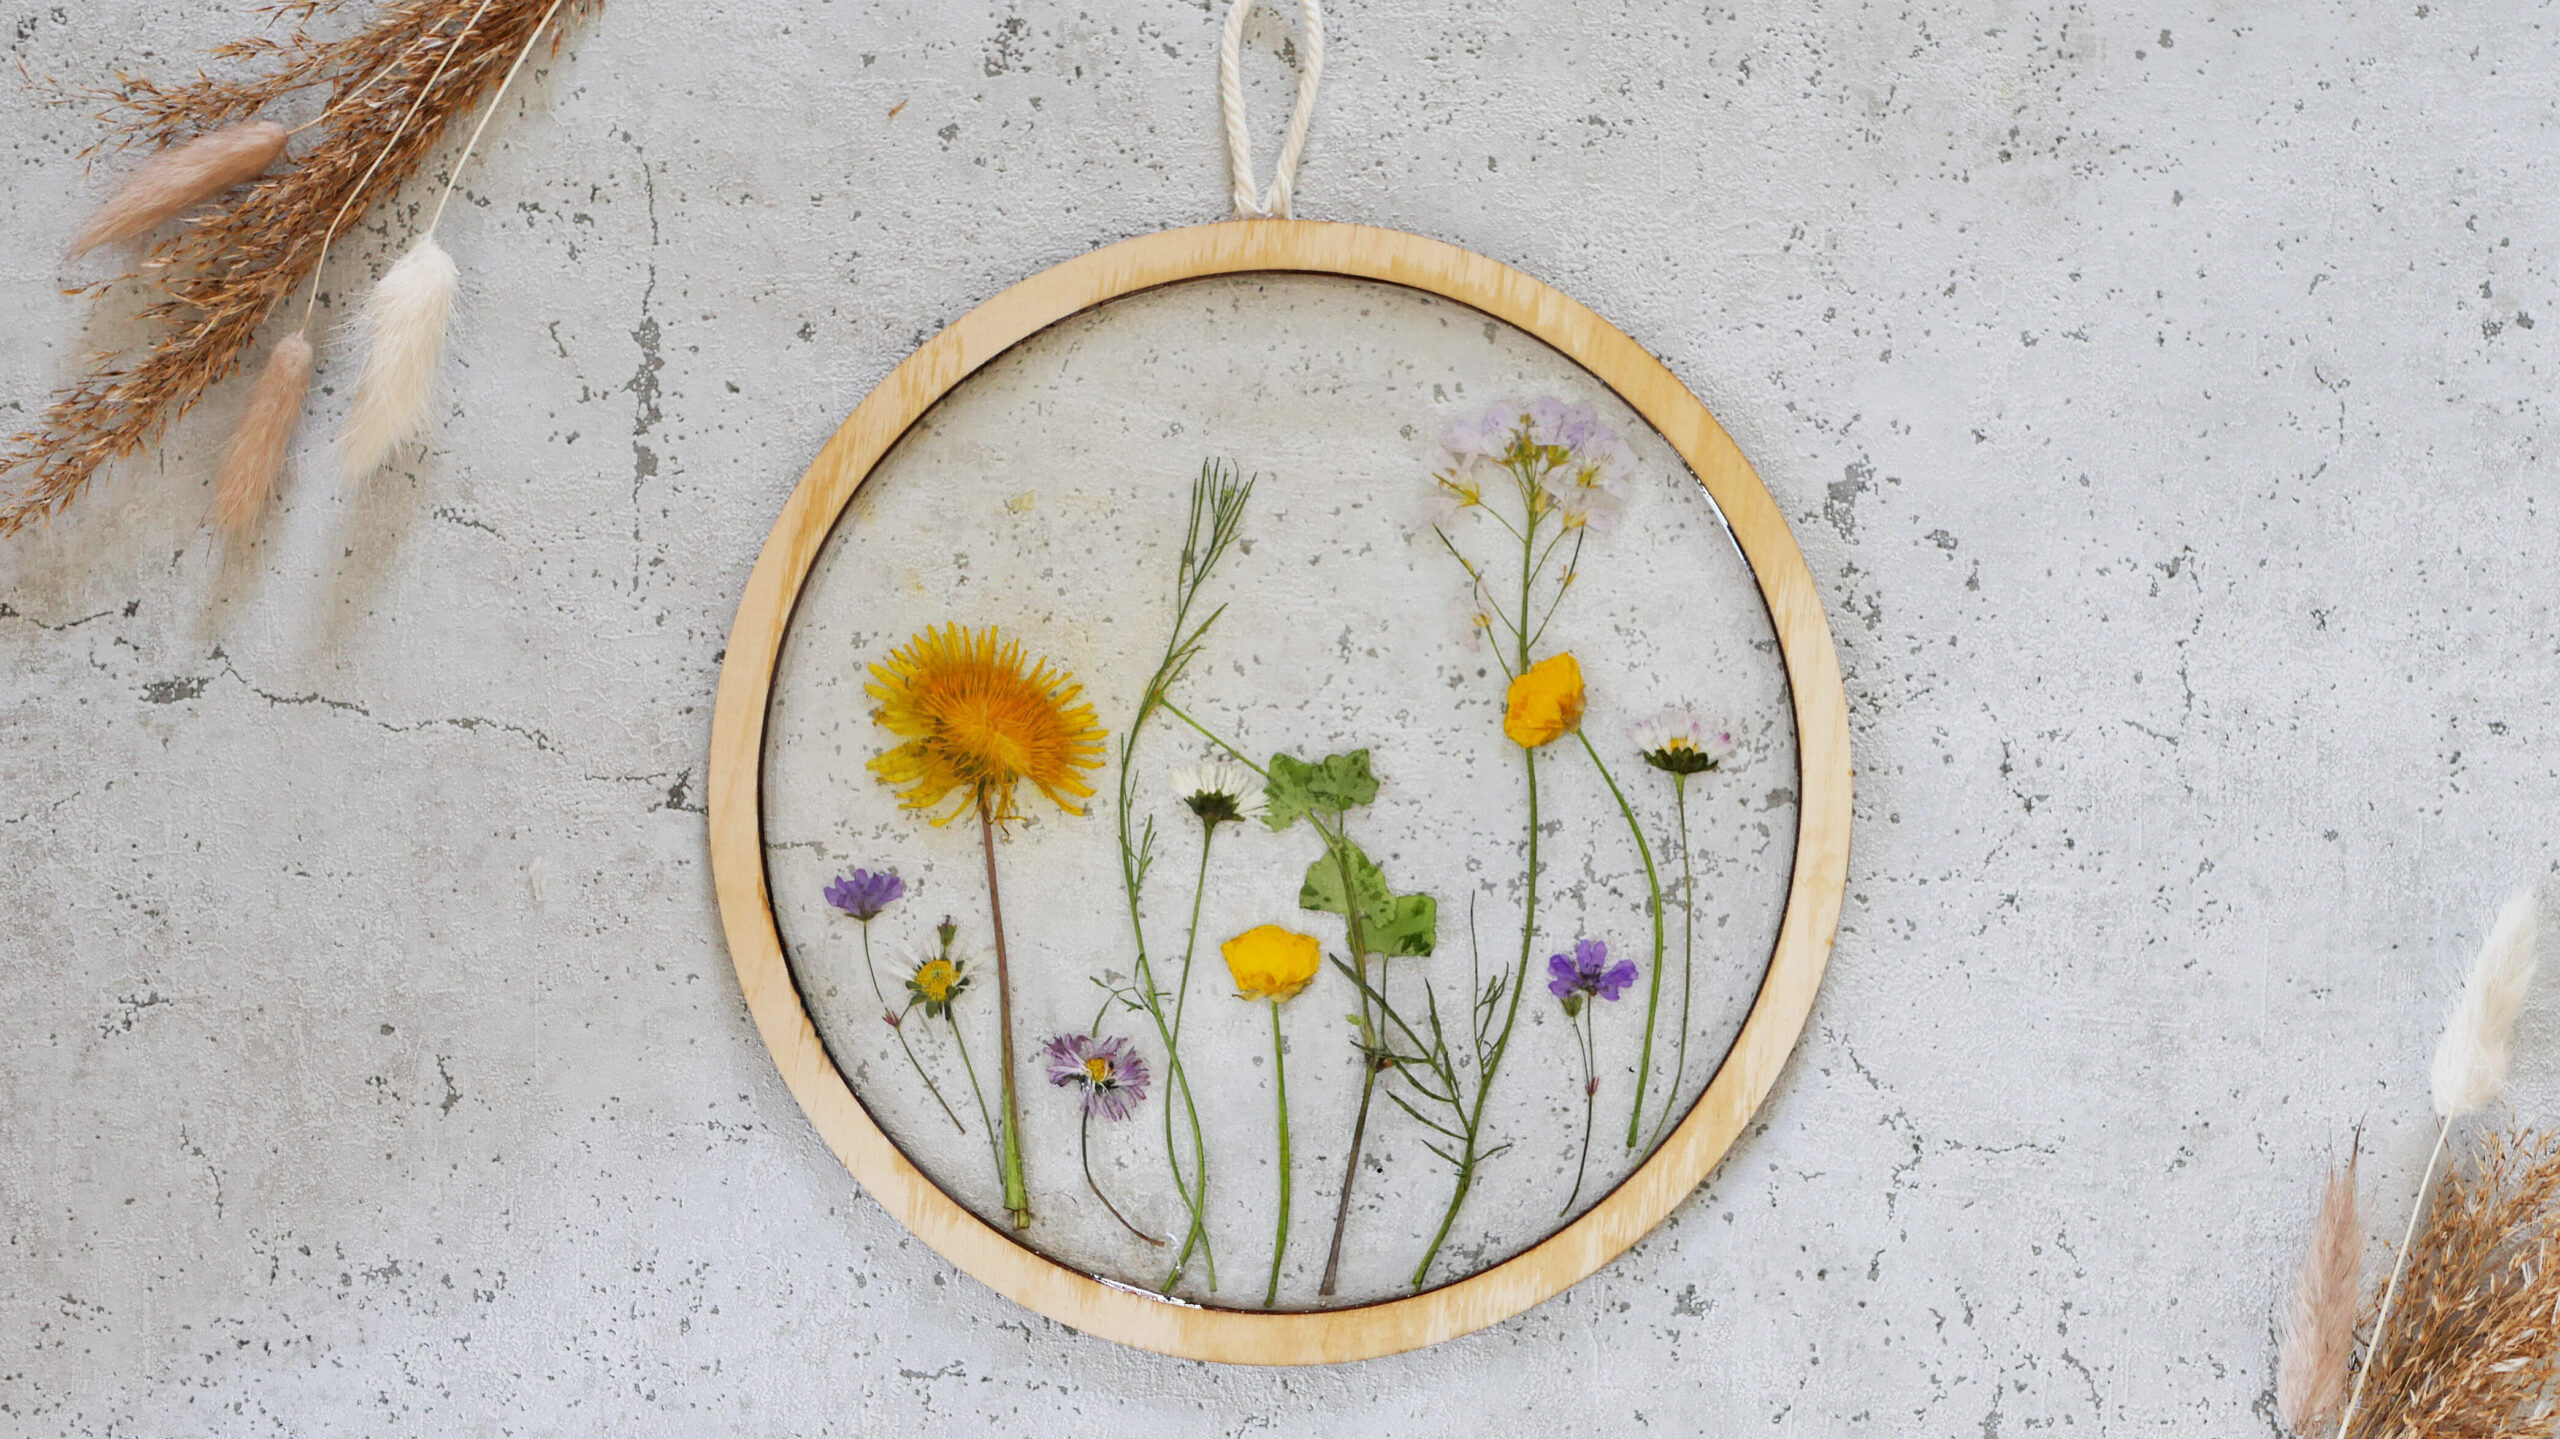 DIY Resin Trockenblumen Bild im Botanical Style